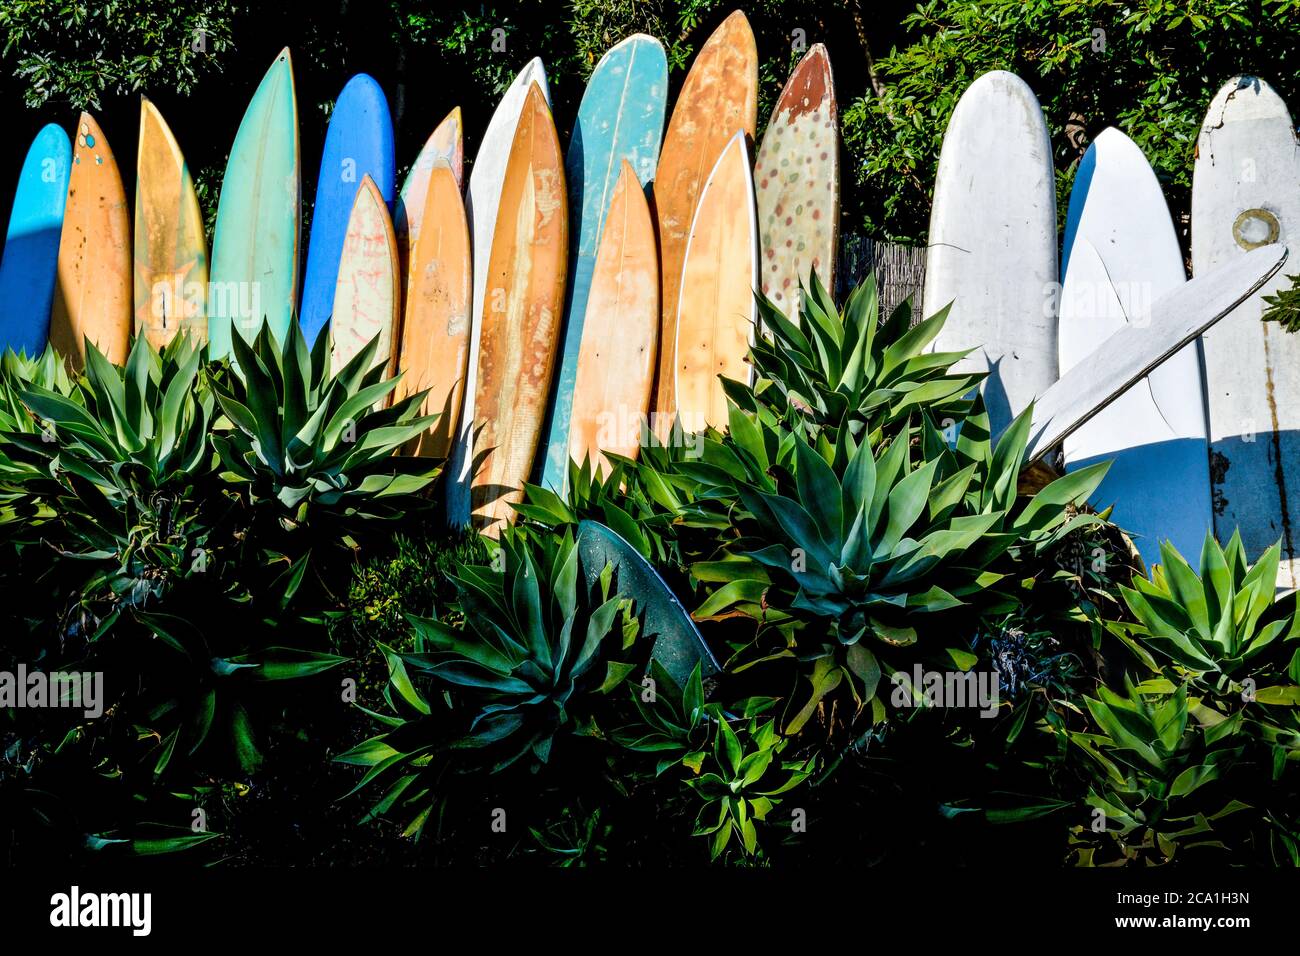 Una gama de tablas de surf antiguas, deshuesadas y retiradas en un jardín de agave mostrando iconos de la cultura del surf en Santa Bárbara, CA, EE.UU Foto de stock